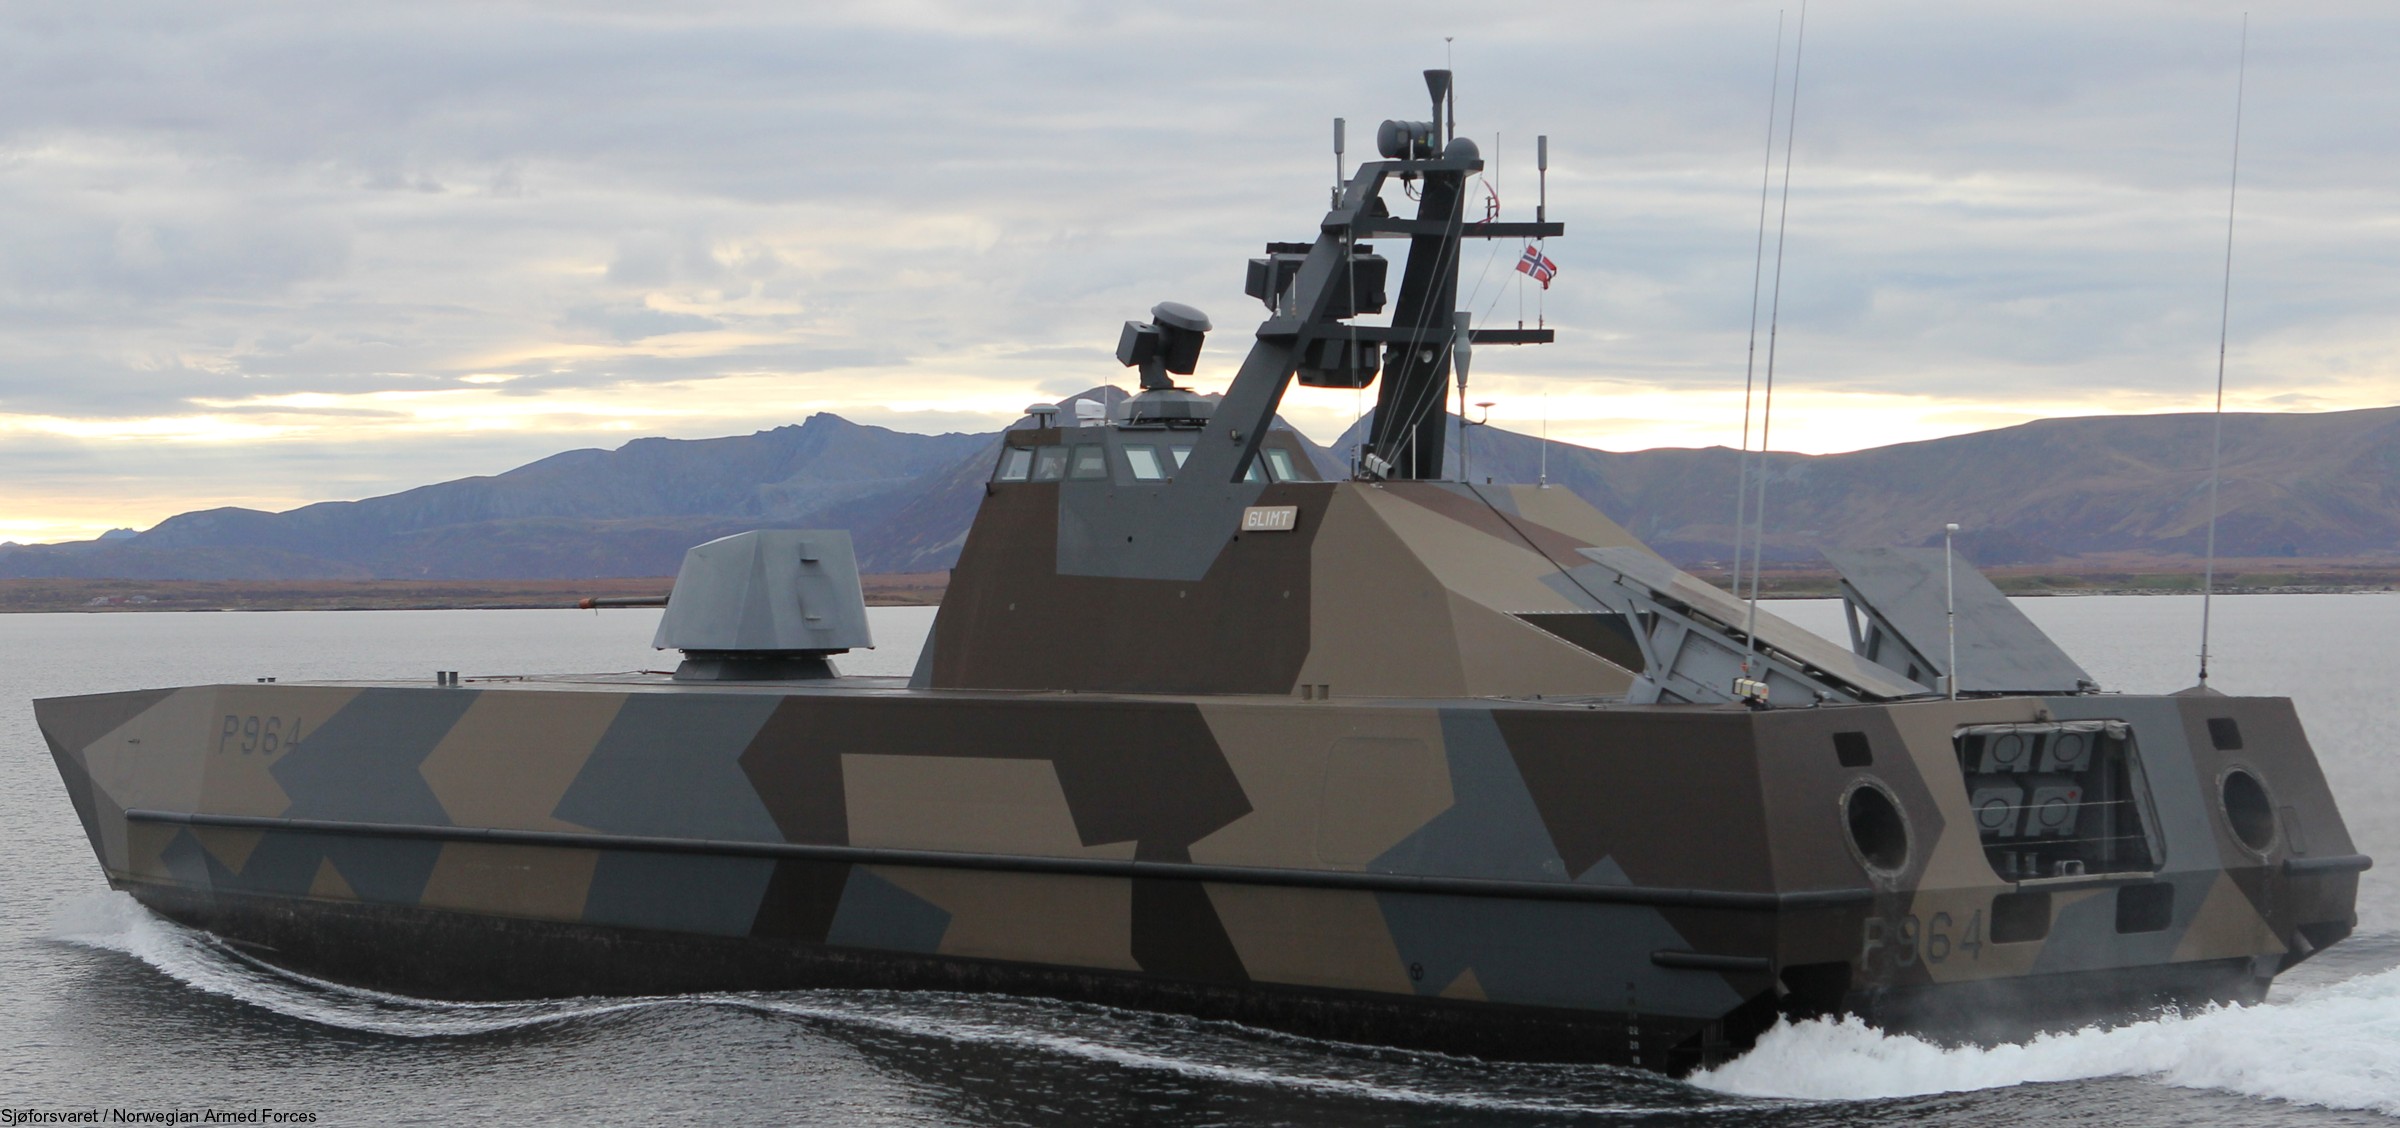 p-964 glimt knm hnoms skjold class corvette royal norwegian navy sjoforsvaret 10